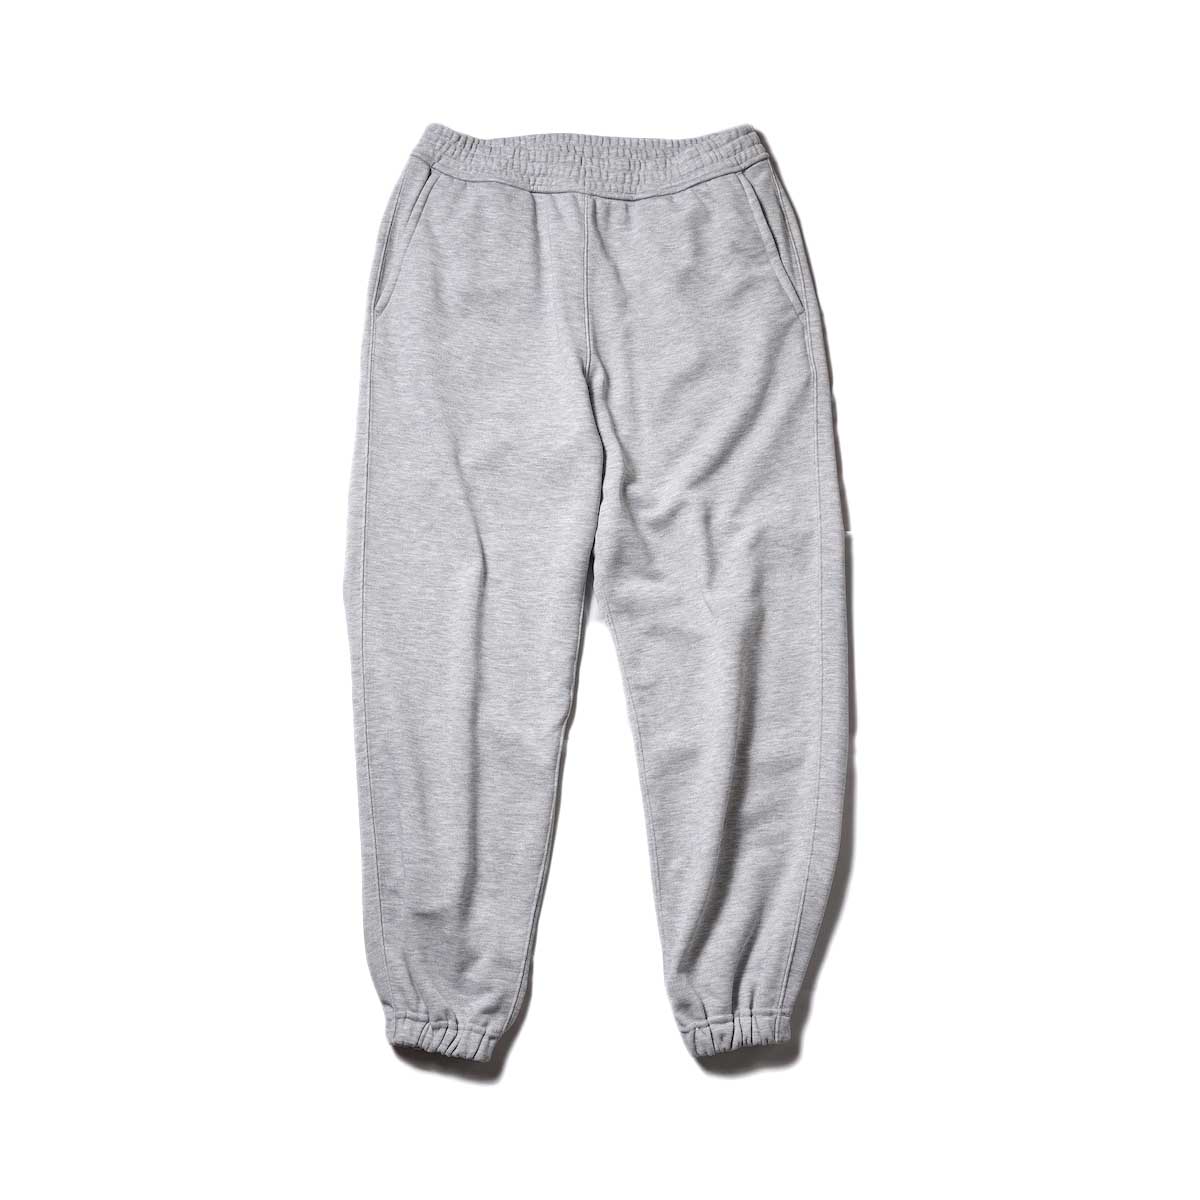 DAIWA PIER39 / Tech Sweat Pants (Gray)TOP